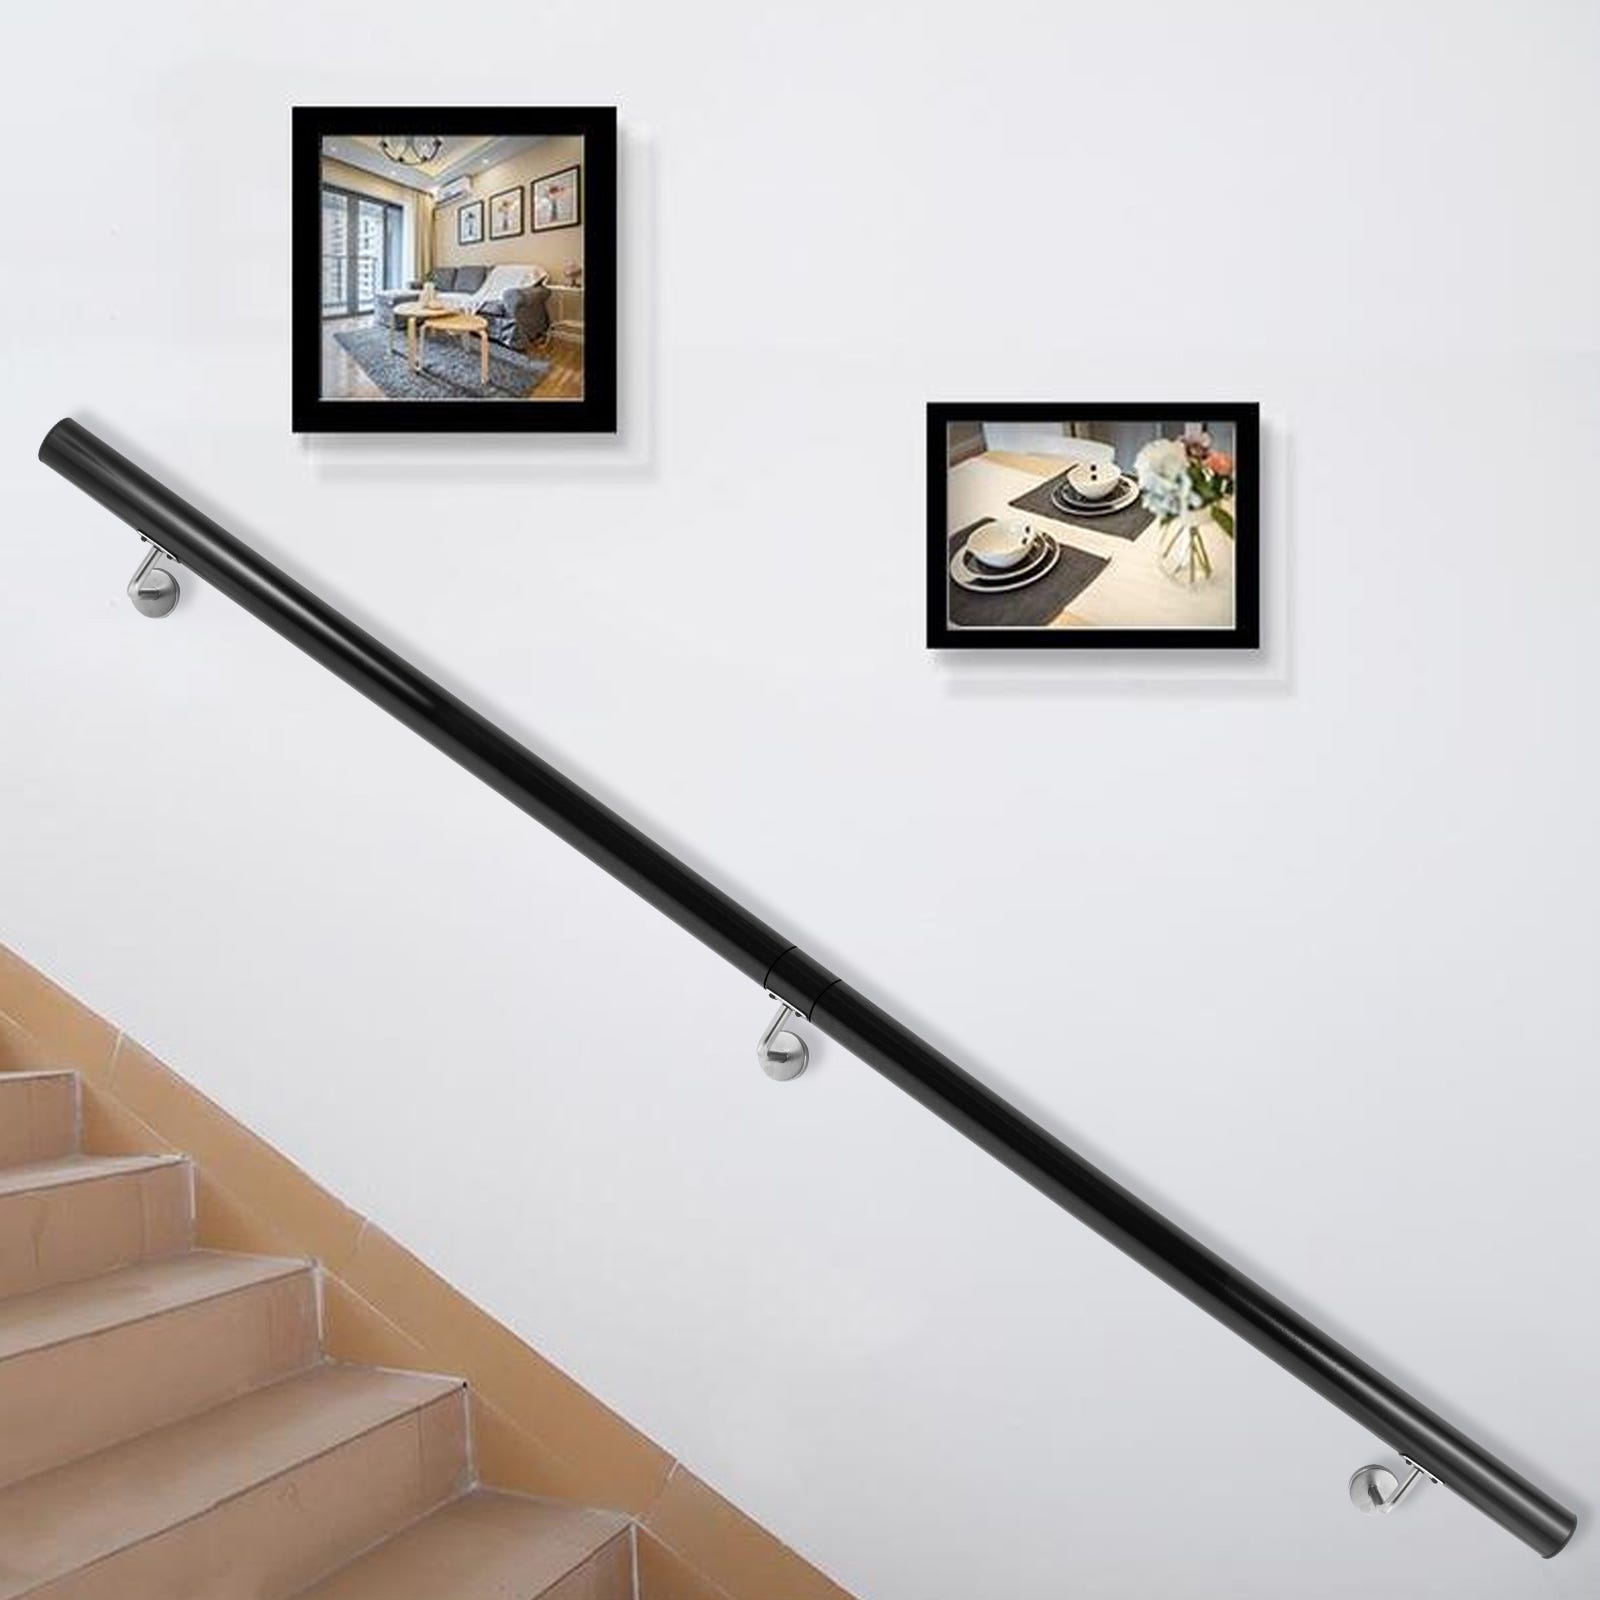 VEVOR Rampe deescalier Longueur 1,5 m, Main Courante pour Escalier  Interieur Capacite 91 kg, Rampe Escalier Alliage deAl